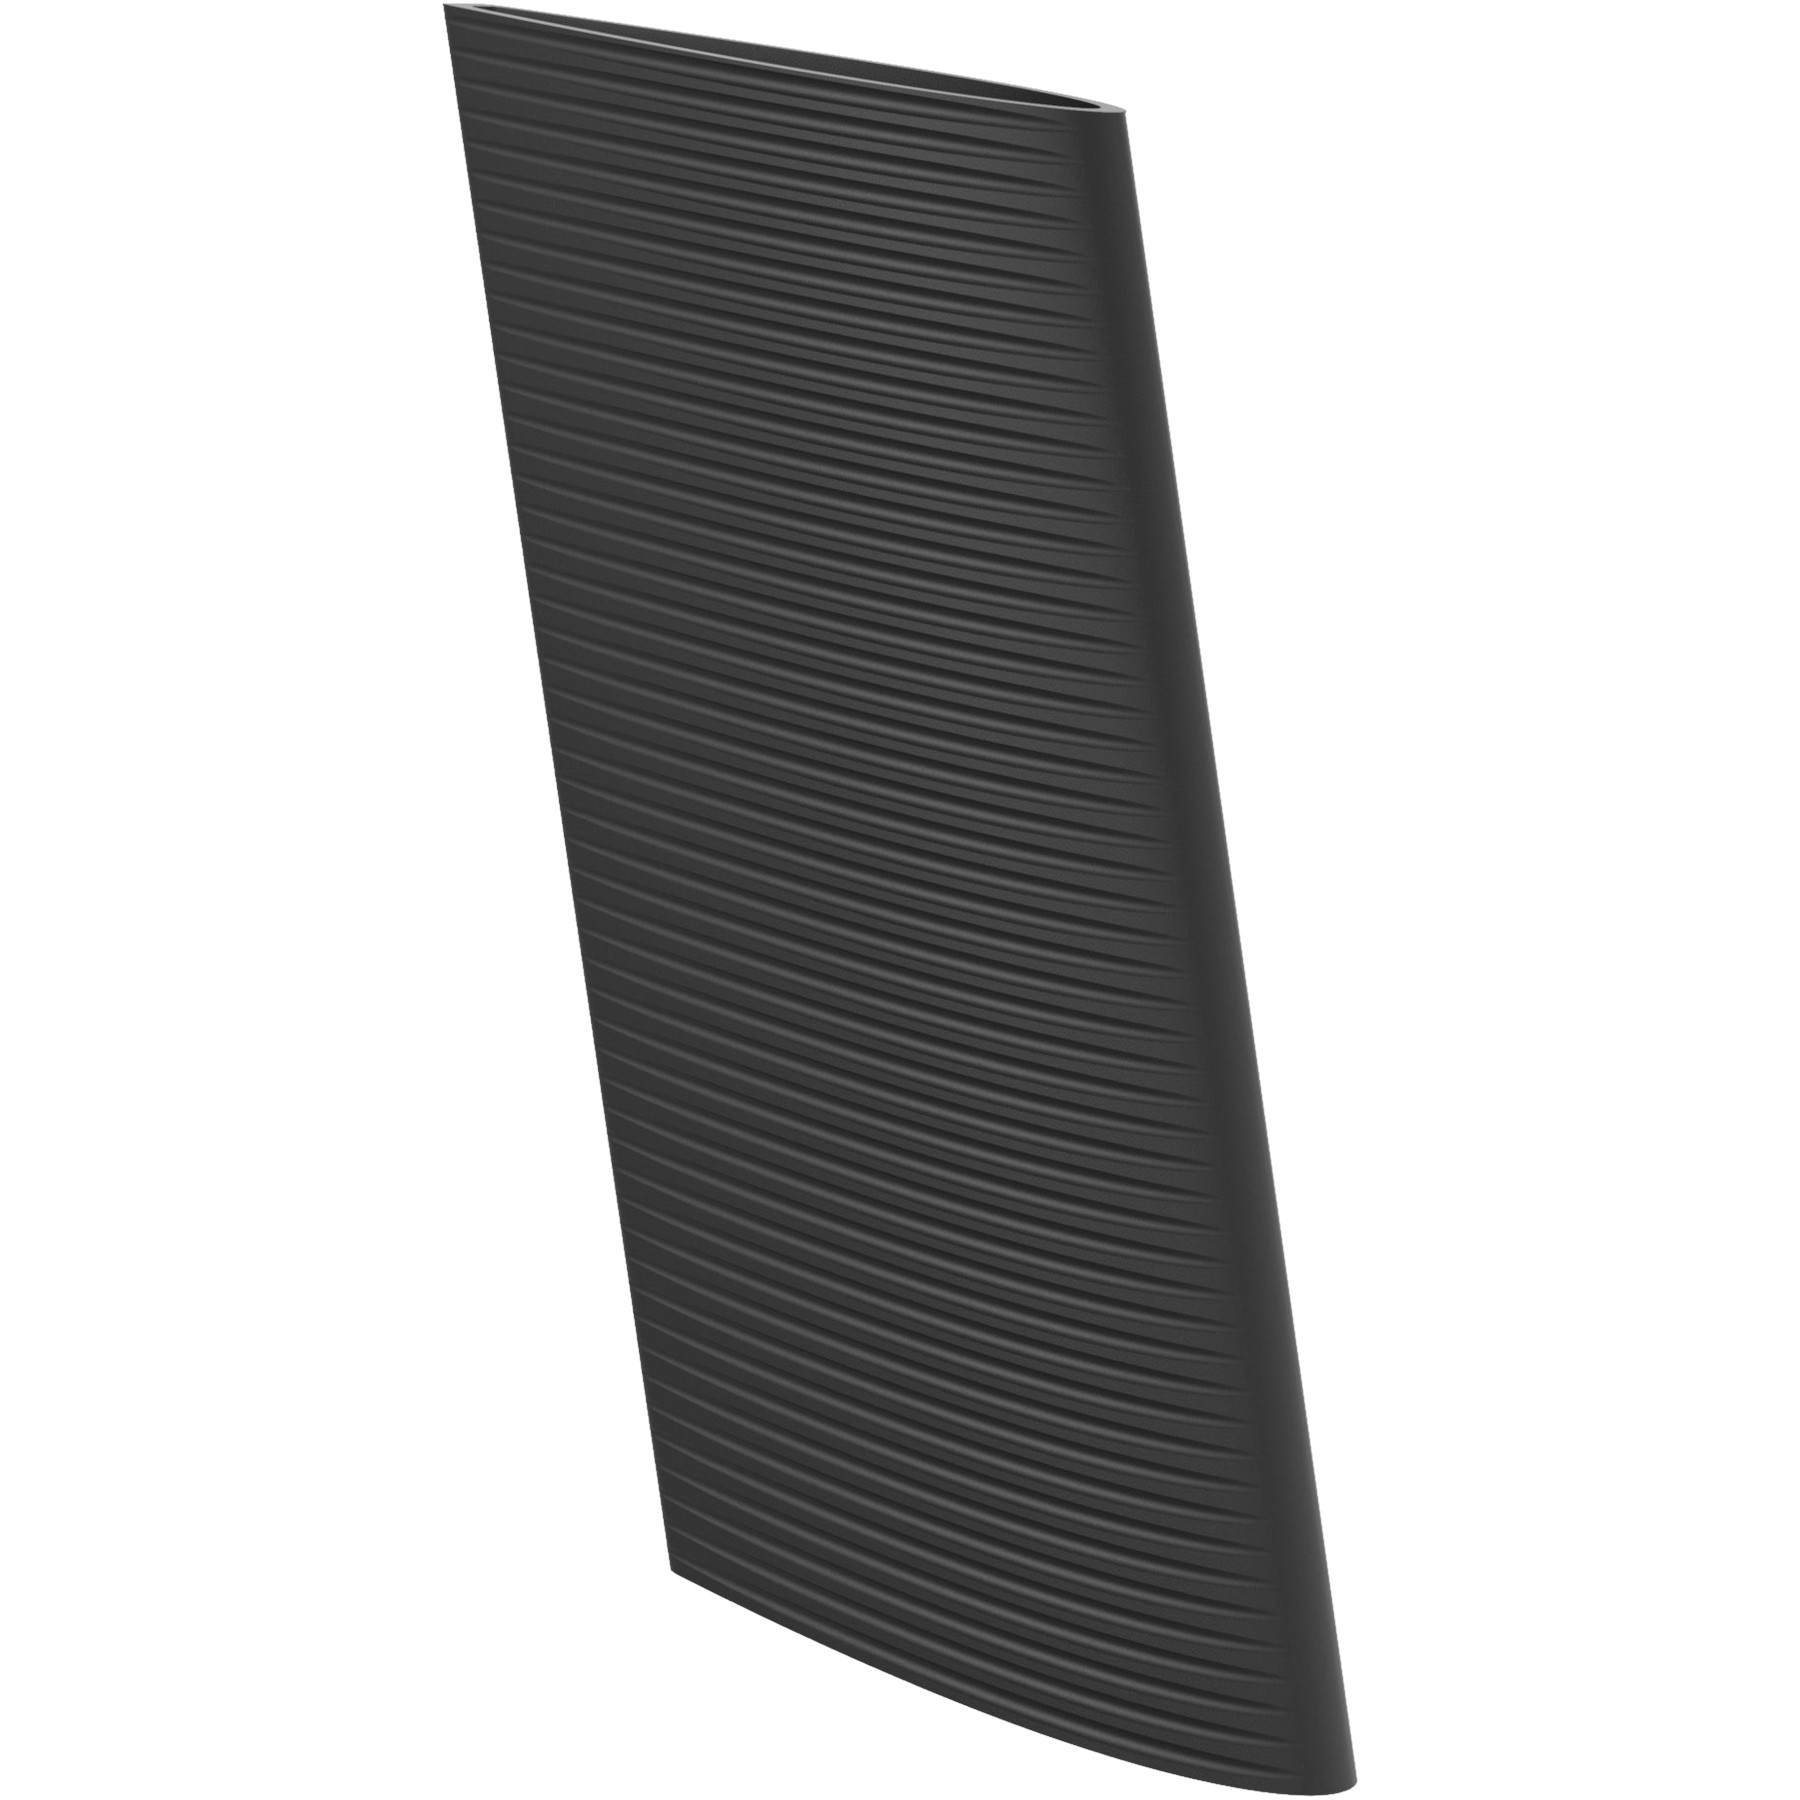 Produktbild von Syncros Blade für Scott Plasma 6 Extensions - schwarz